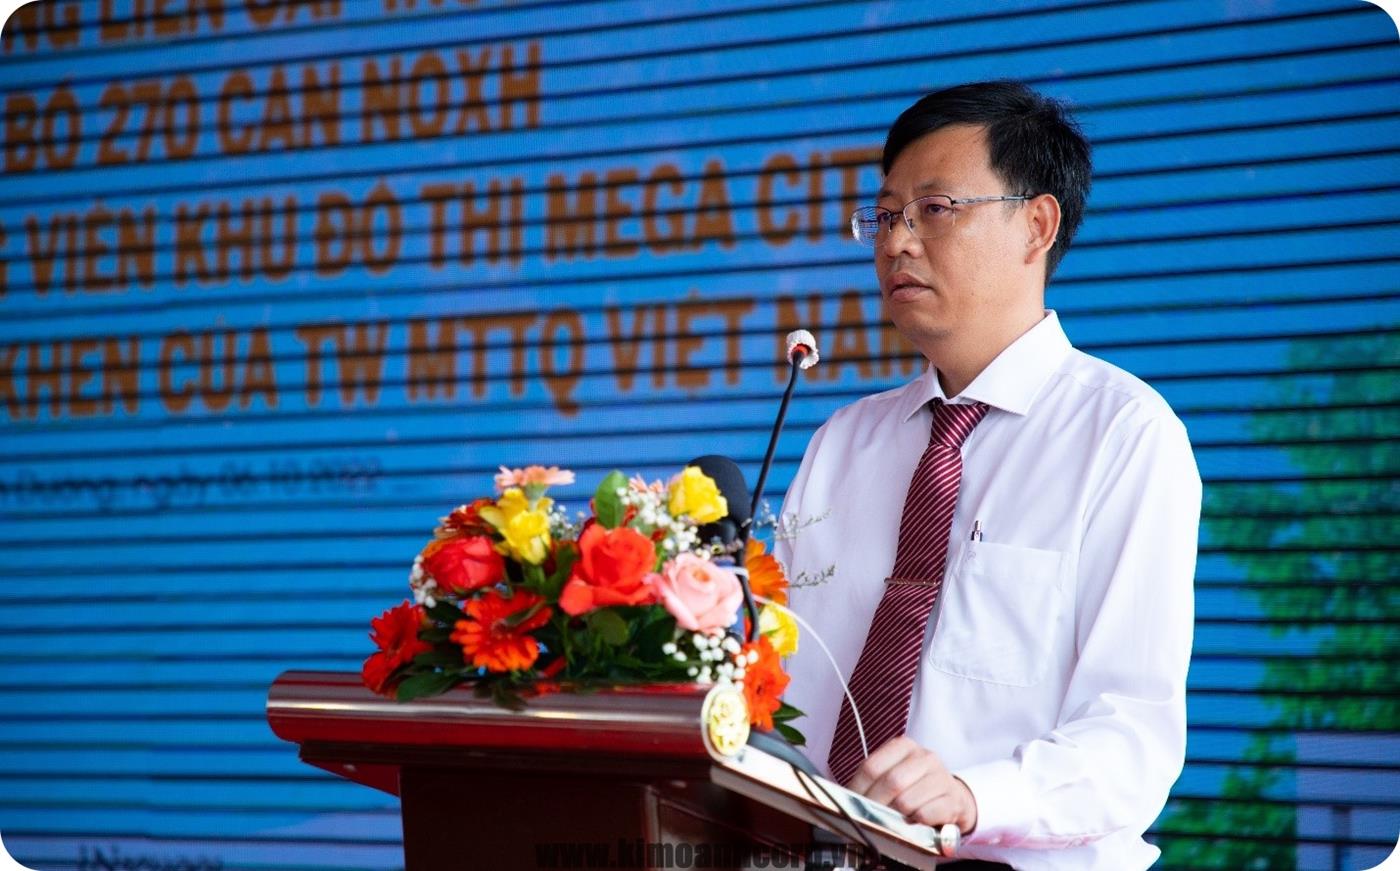 Ông Trần Ngọc Cường – Phó Chủ tịch UBND Thị xã Bến Cát chia sẻ về tầm nhìn phát triển Thành phố Bến Cát trong tương lai.